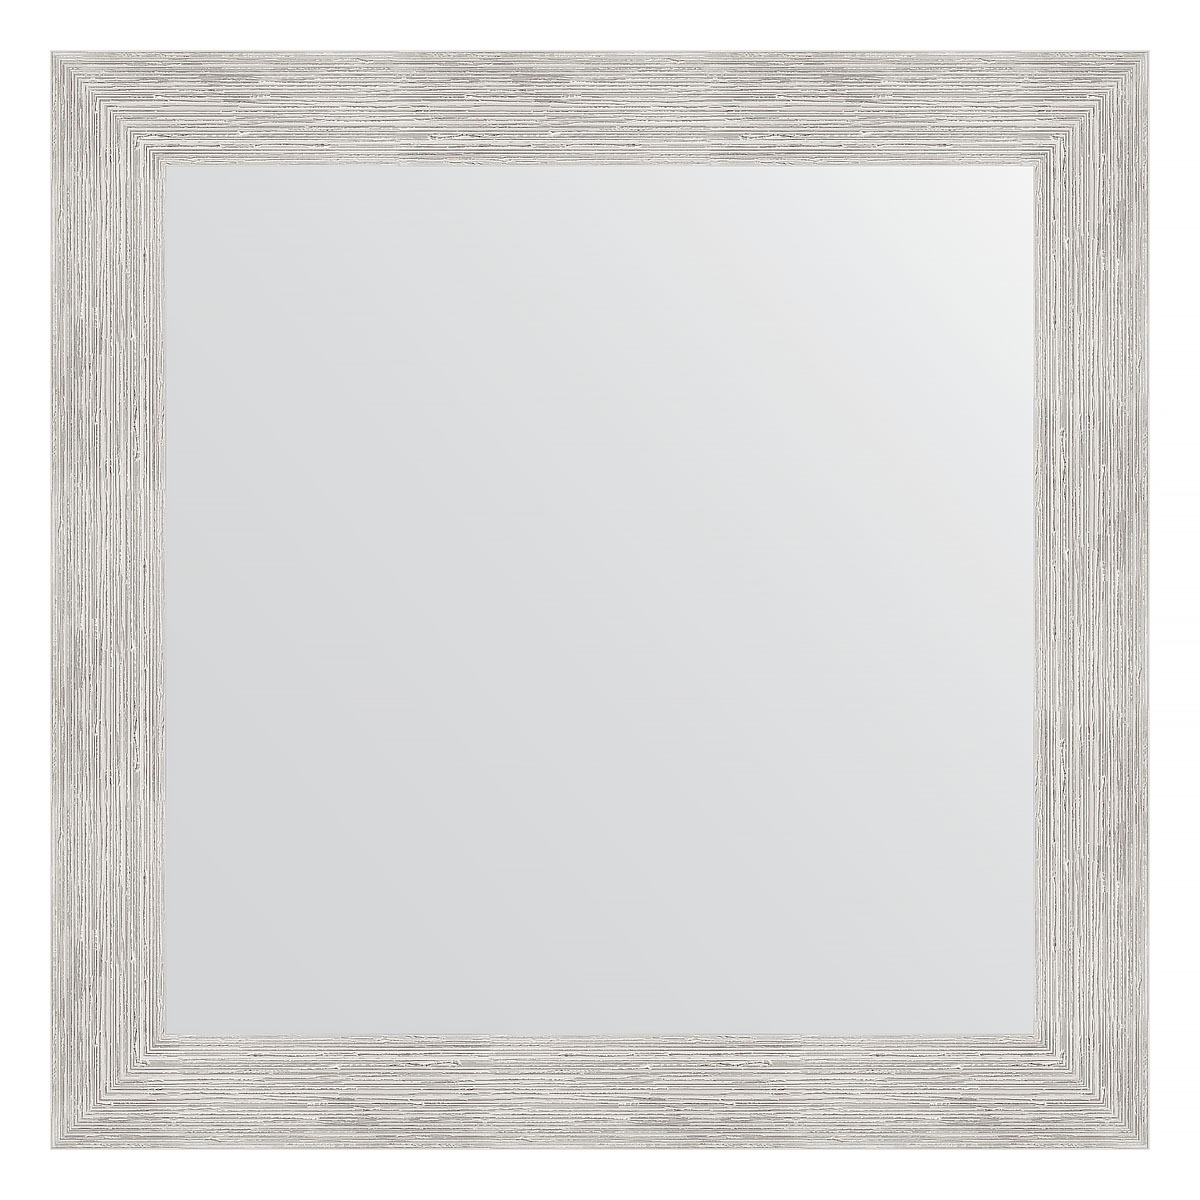 Зеркало в багетной раме Evoform серебряный дождь 70 мм 66х66 см